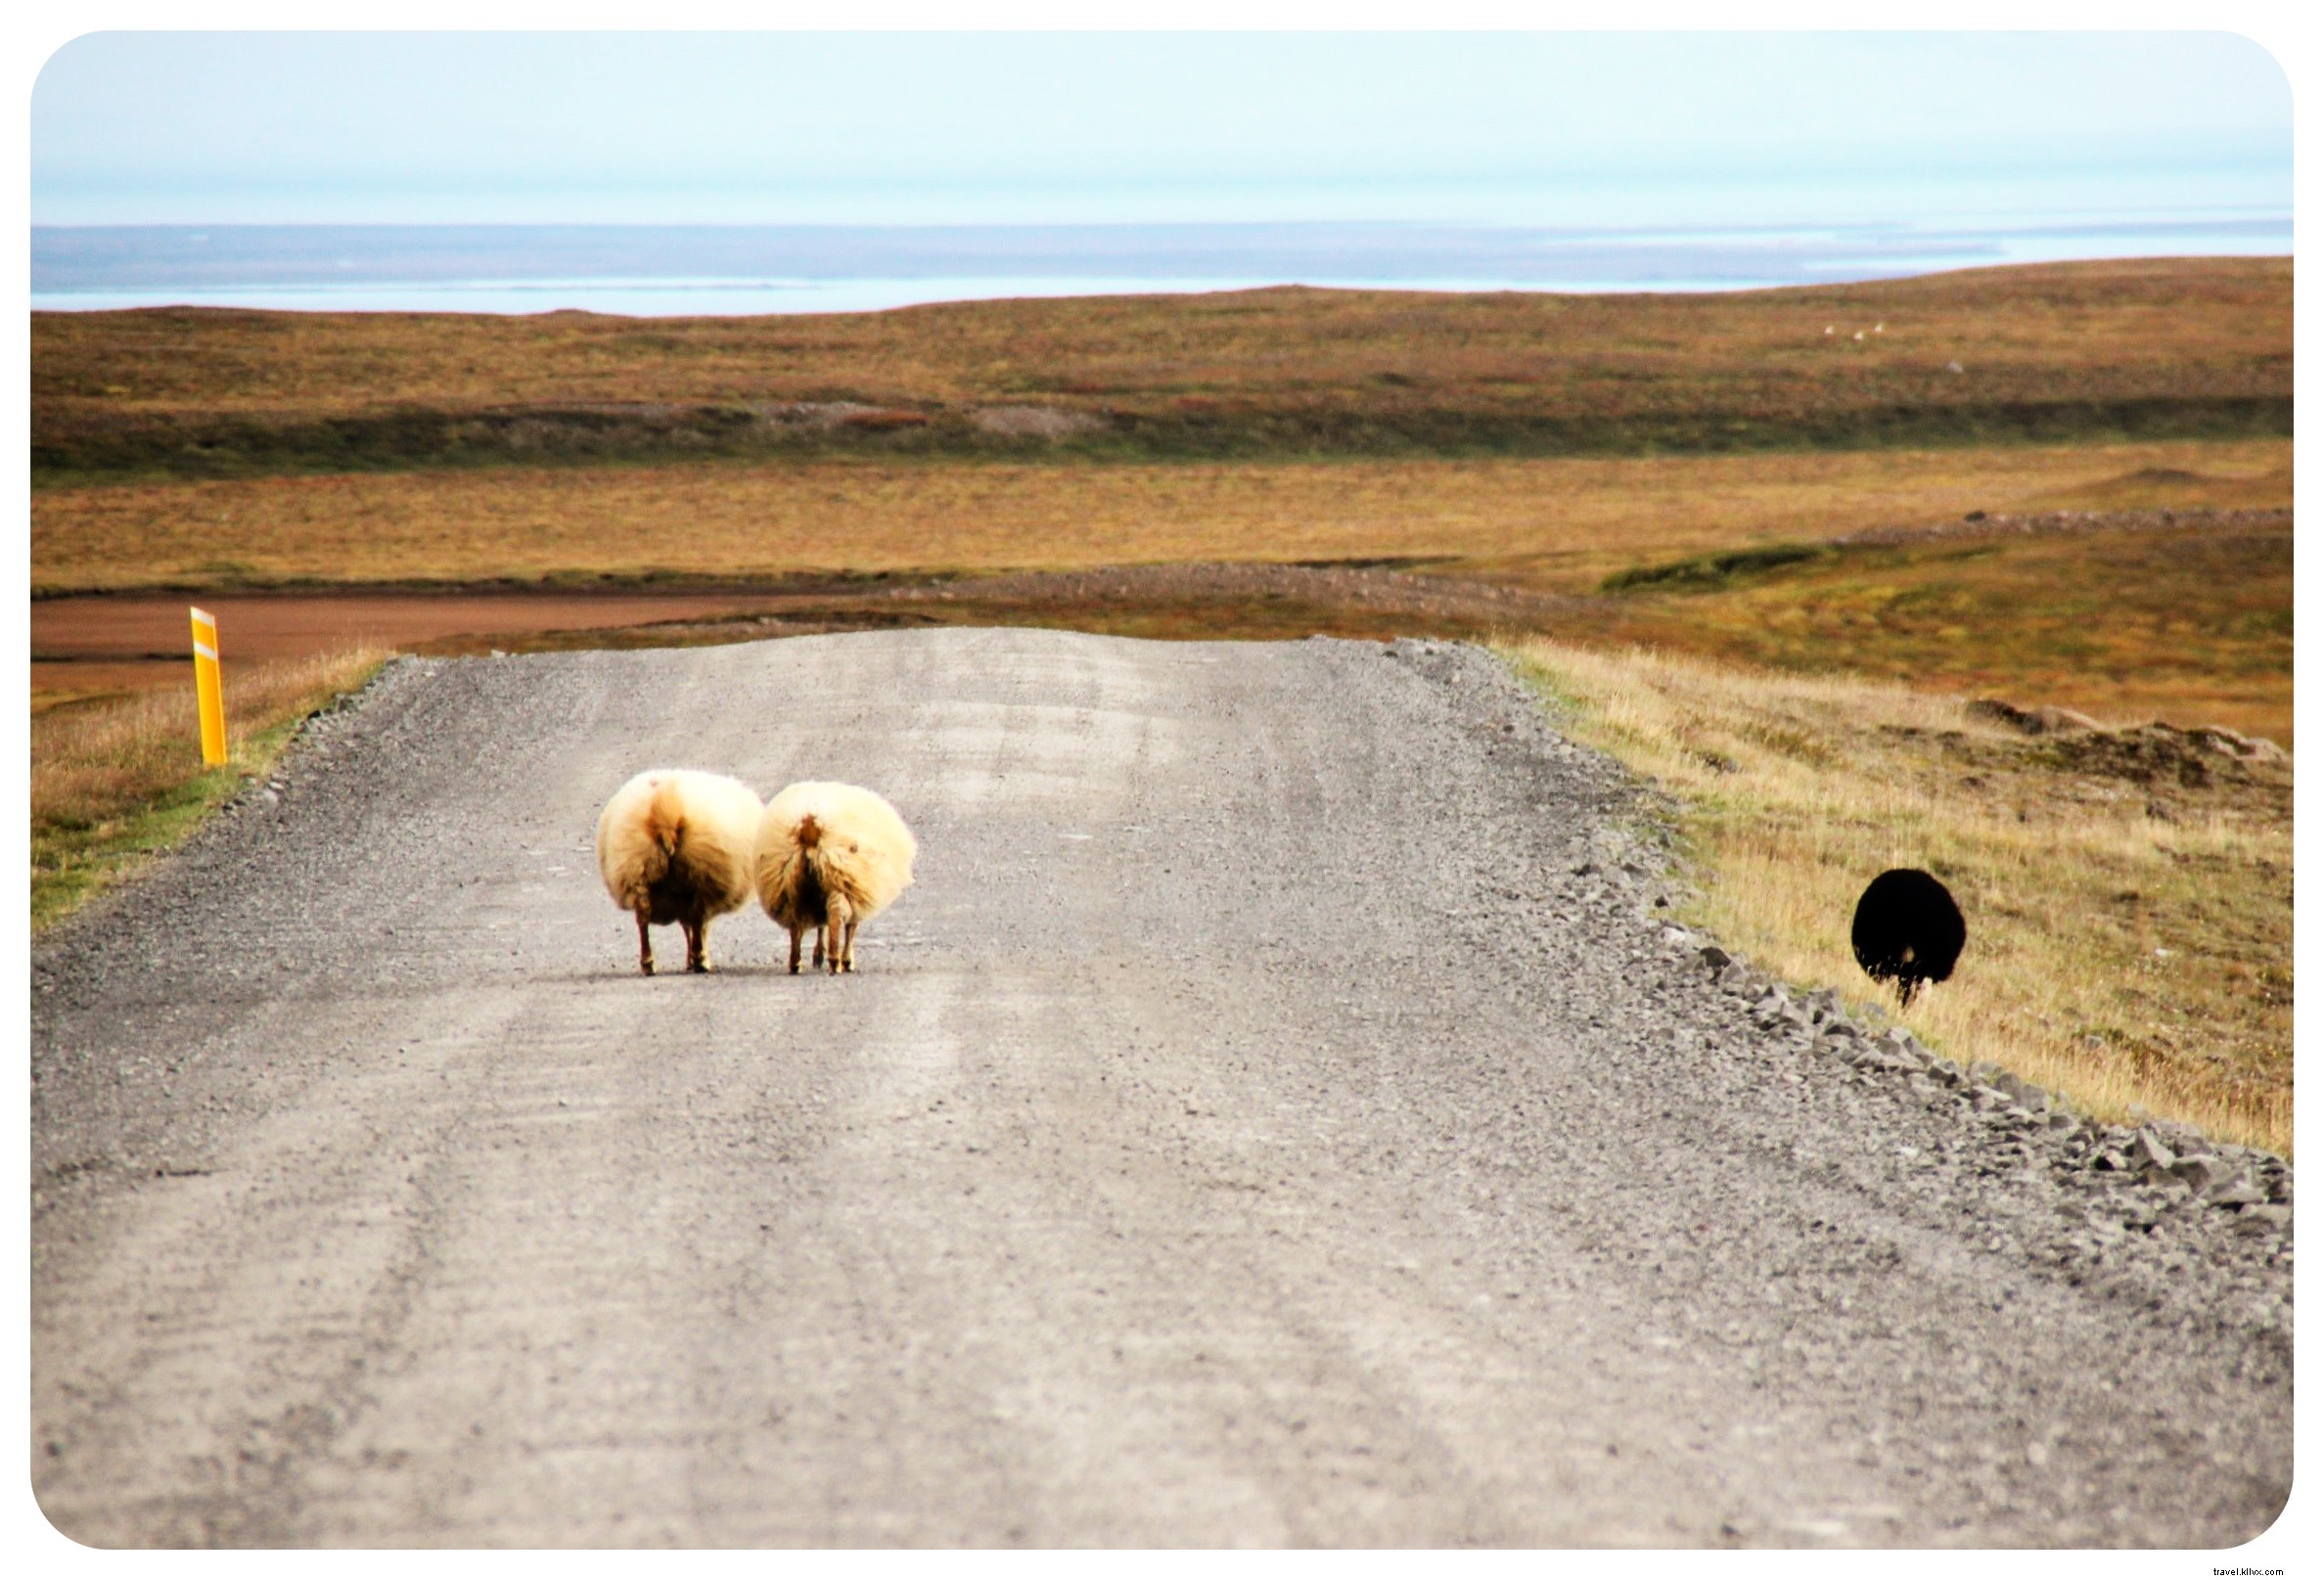 Tres razones por las que viajar por carretera es la mejor manera de ver Islandia